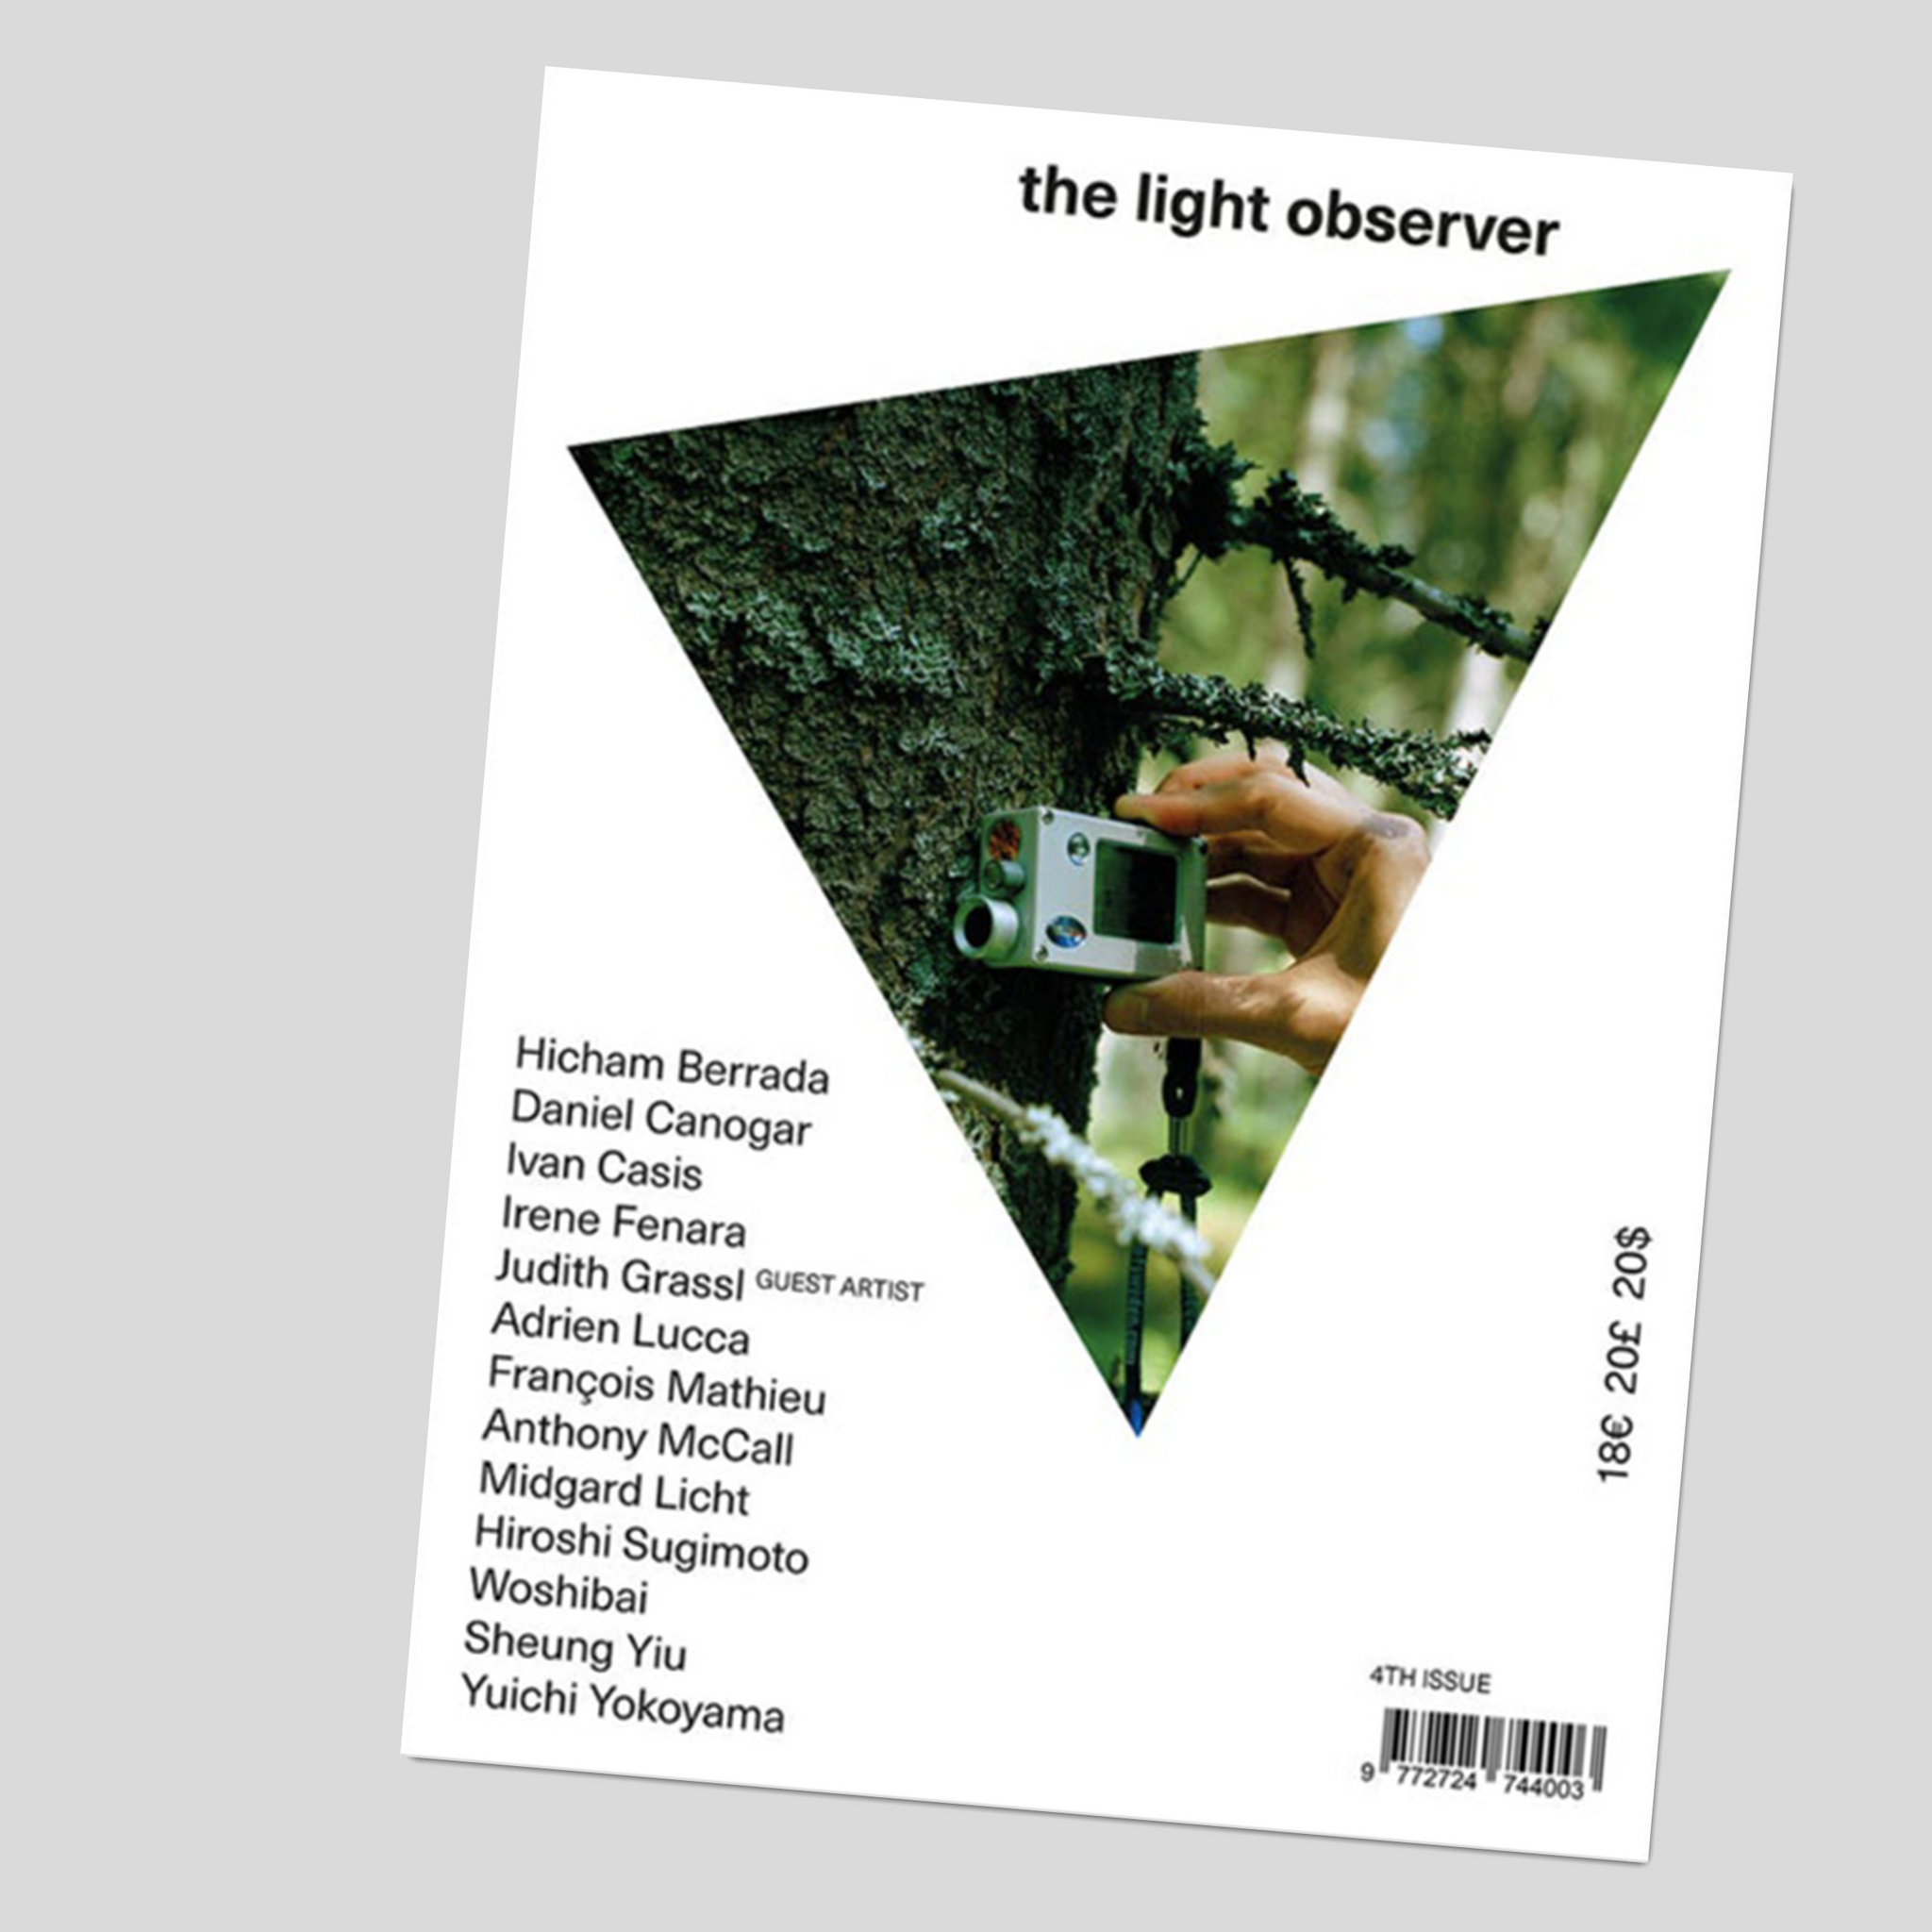 The Light Observer #4